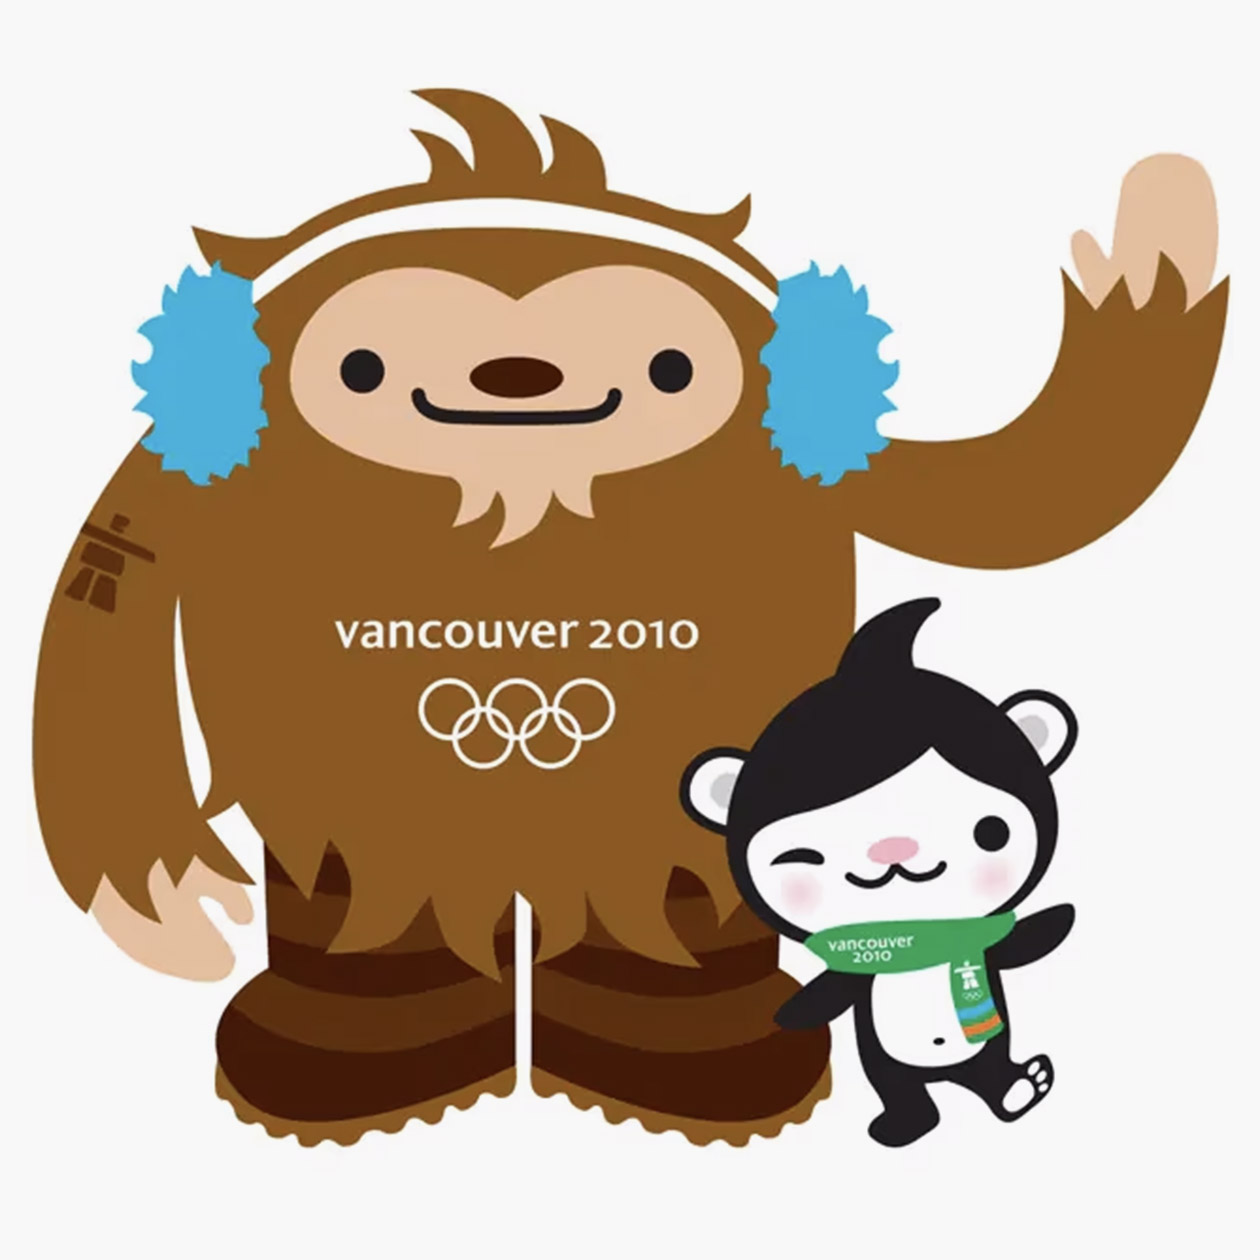 Критики сравнивали Куатчи с мемным медведем Педобиром — некоторые СМИ даже проиллюстрировали им новость о выборе талисмана Ванкувера-2010. Источник: olympics.com